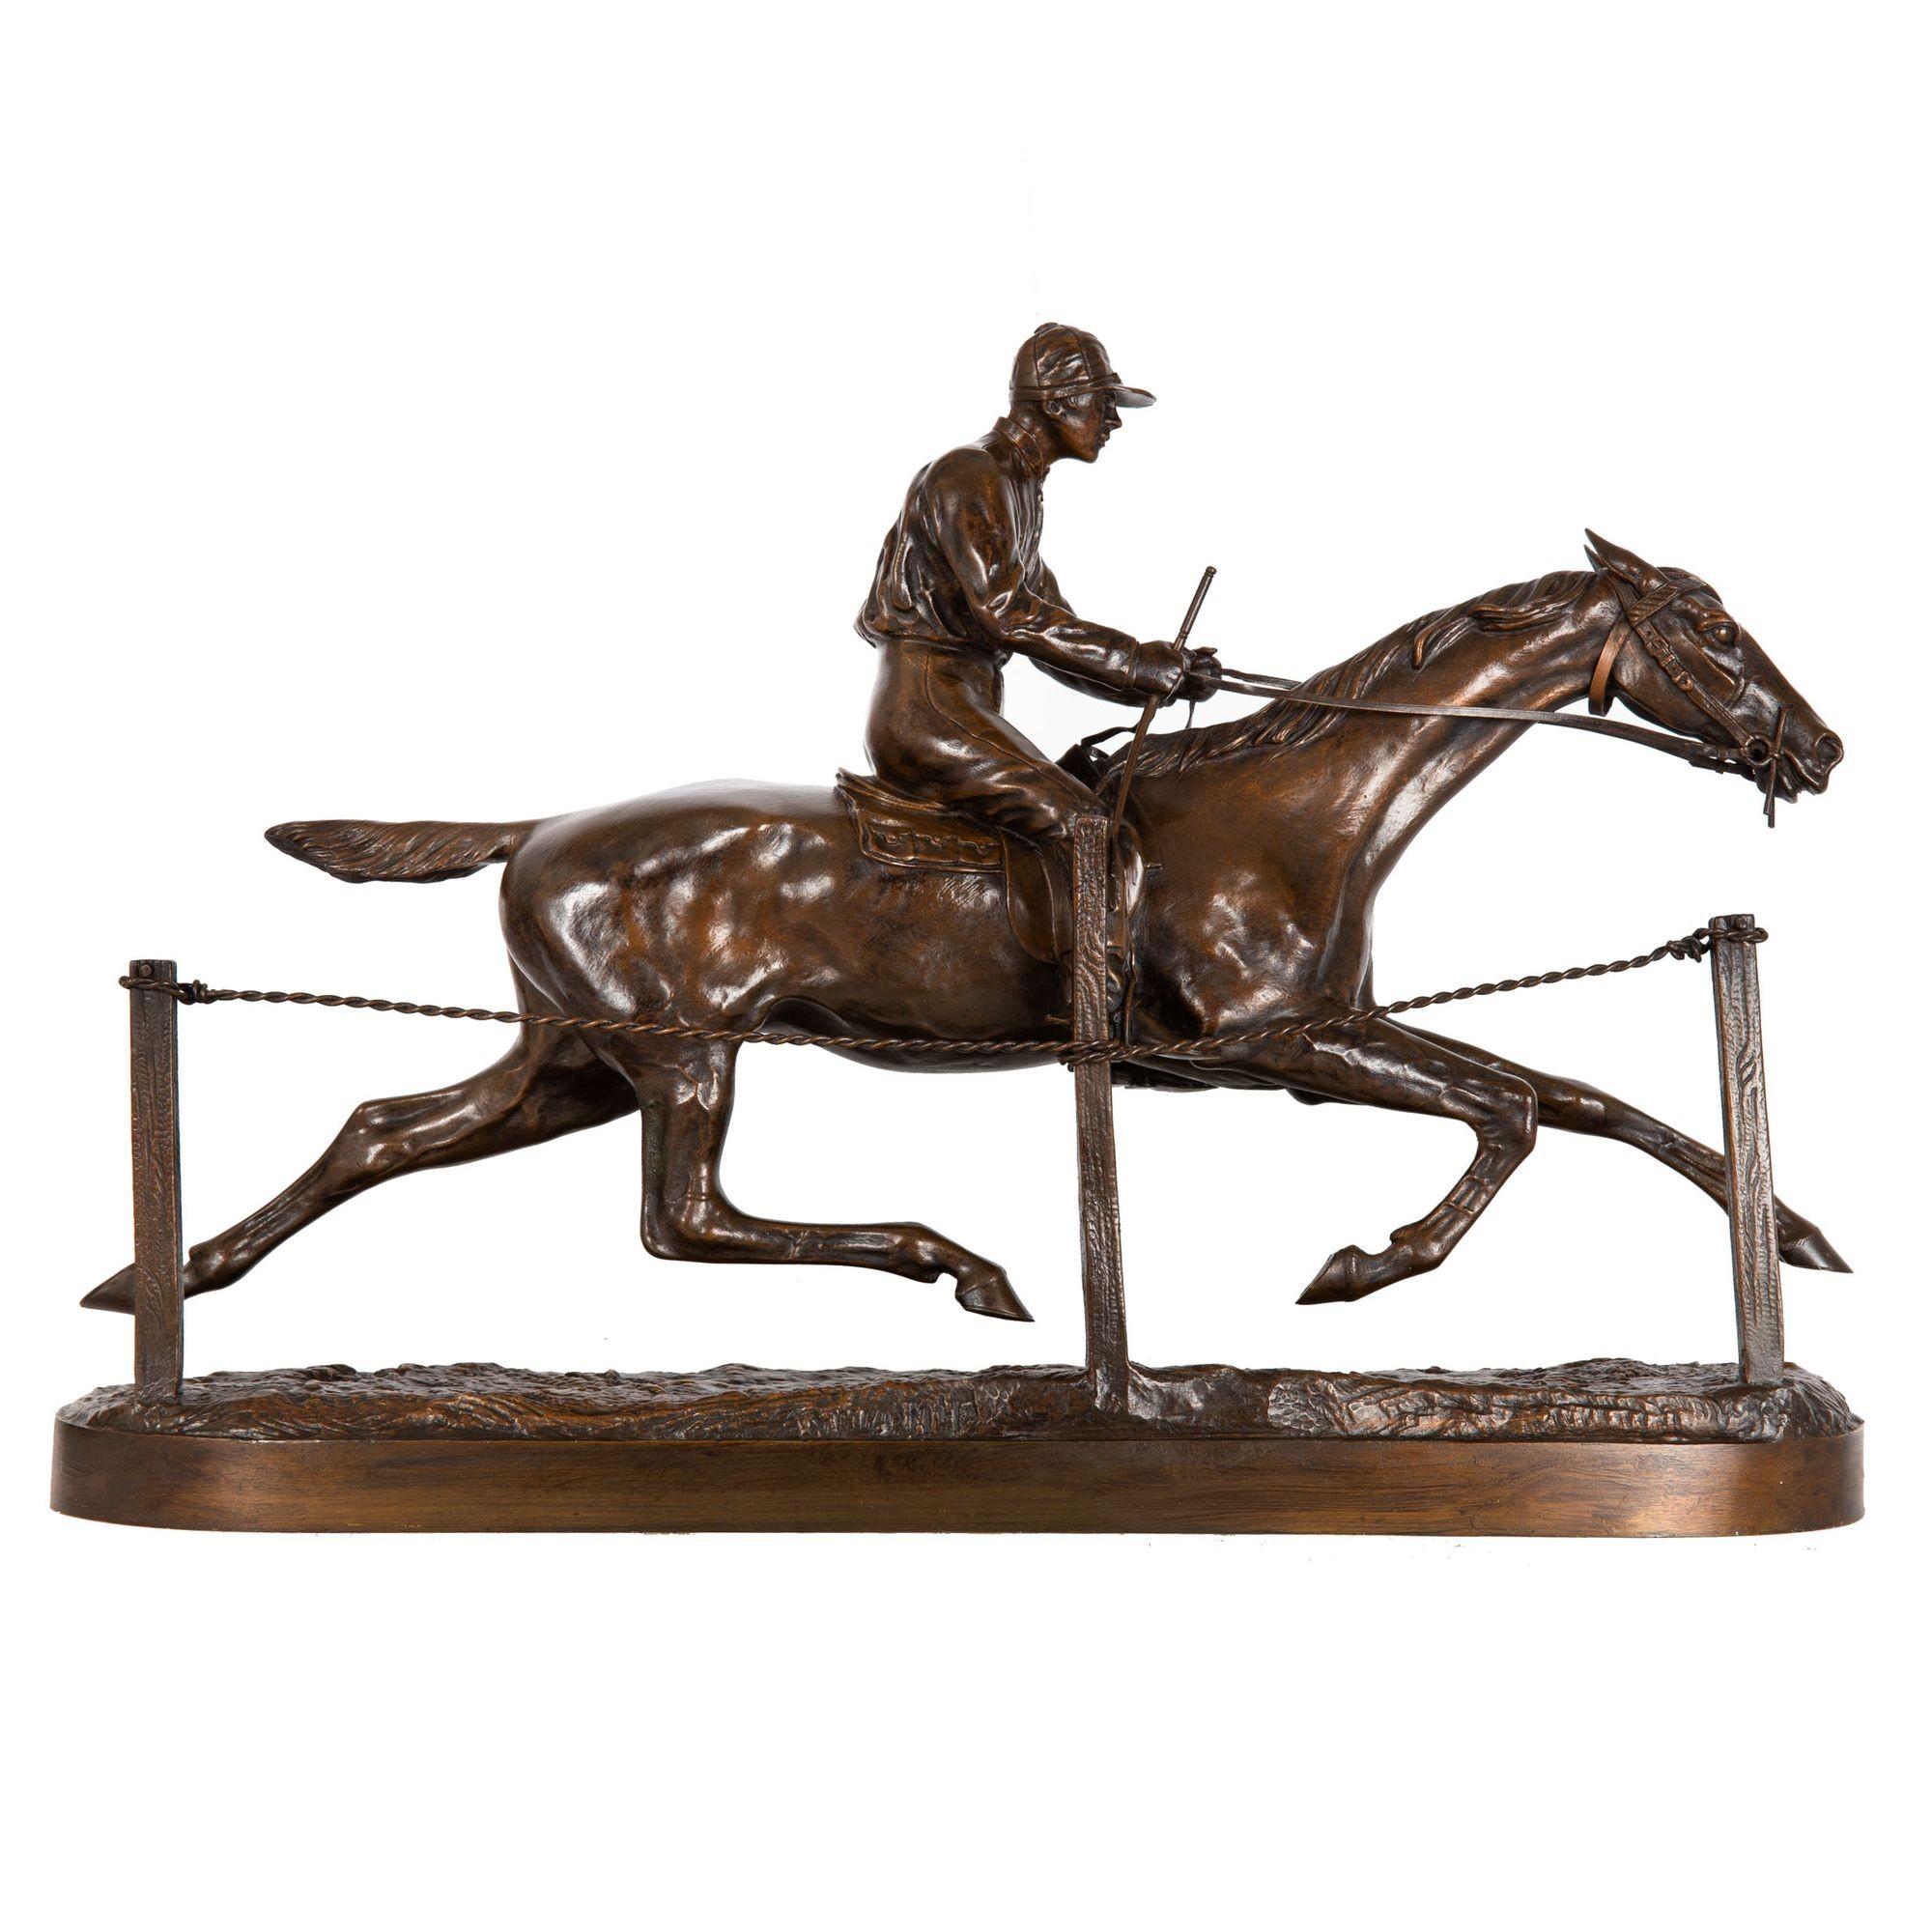 H.R. DE VAINS
Français, 1848 - 1886

Jockey sur un cheval de course

Bronze patiné  signé en bas 